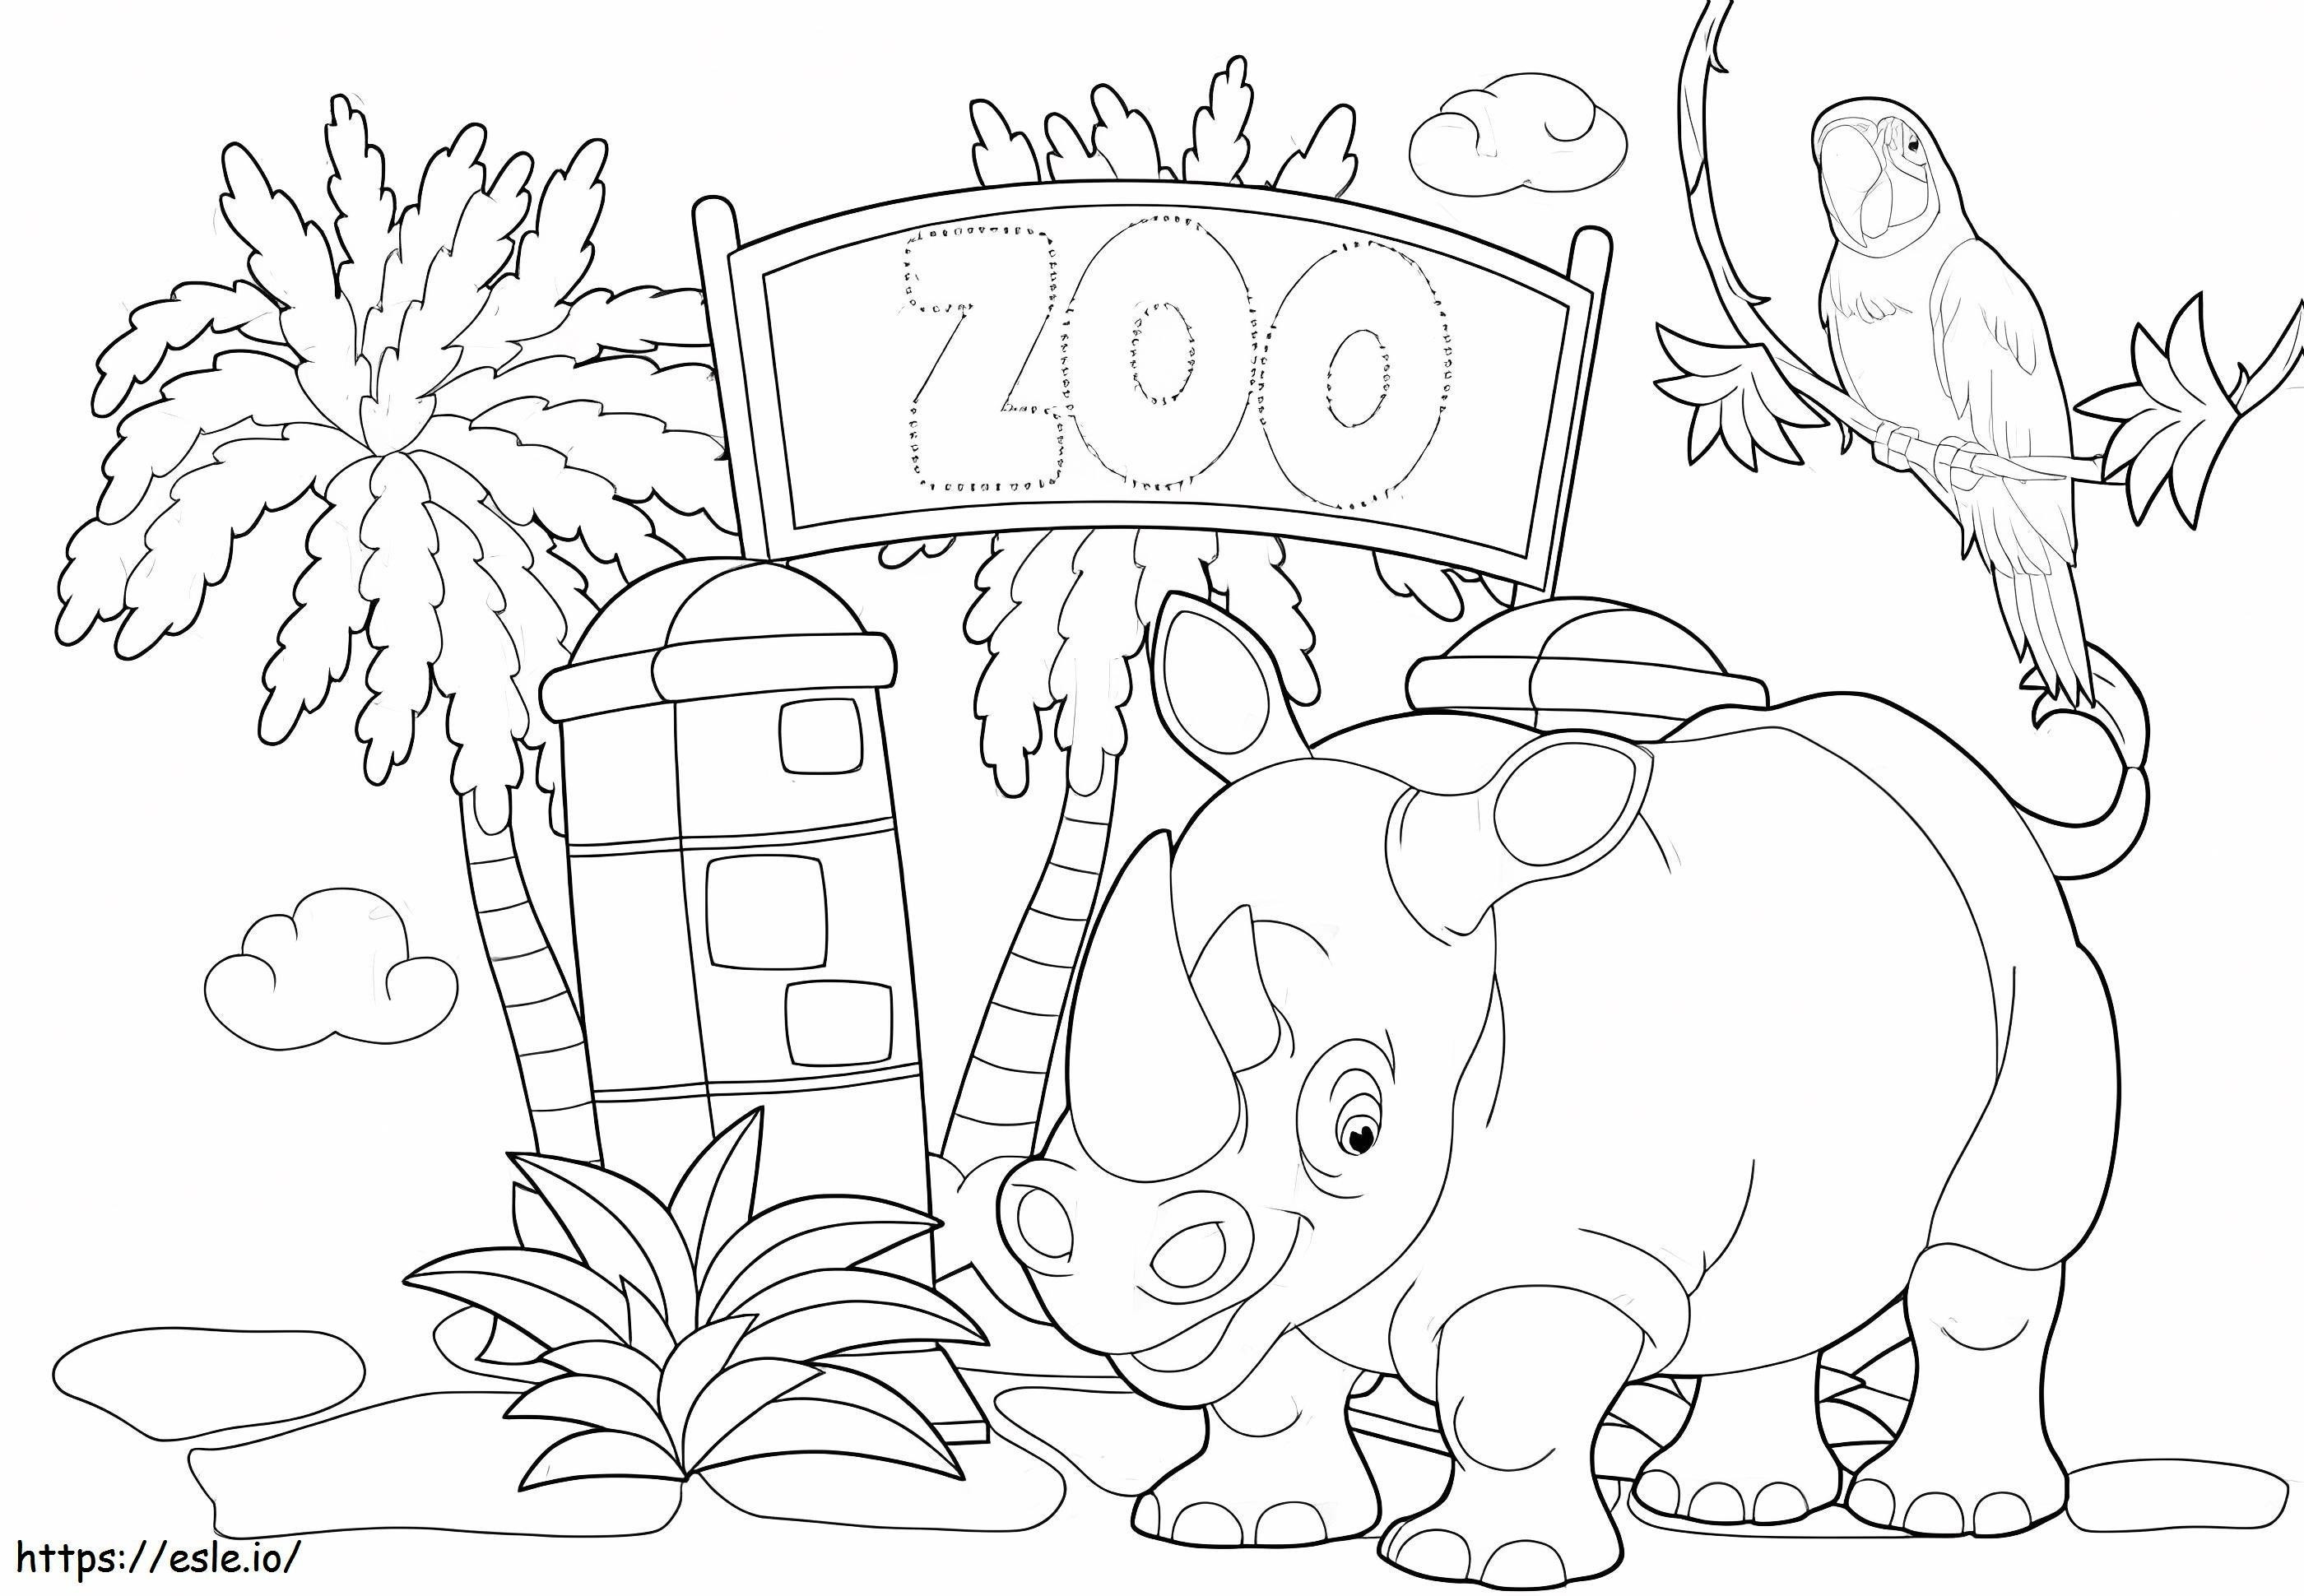 Rinocerul și papagalul sunt la grădina zoologică de colorat